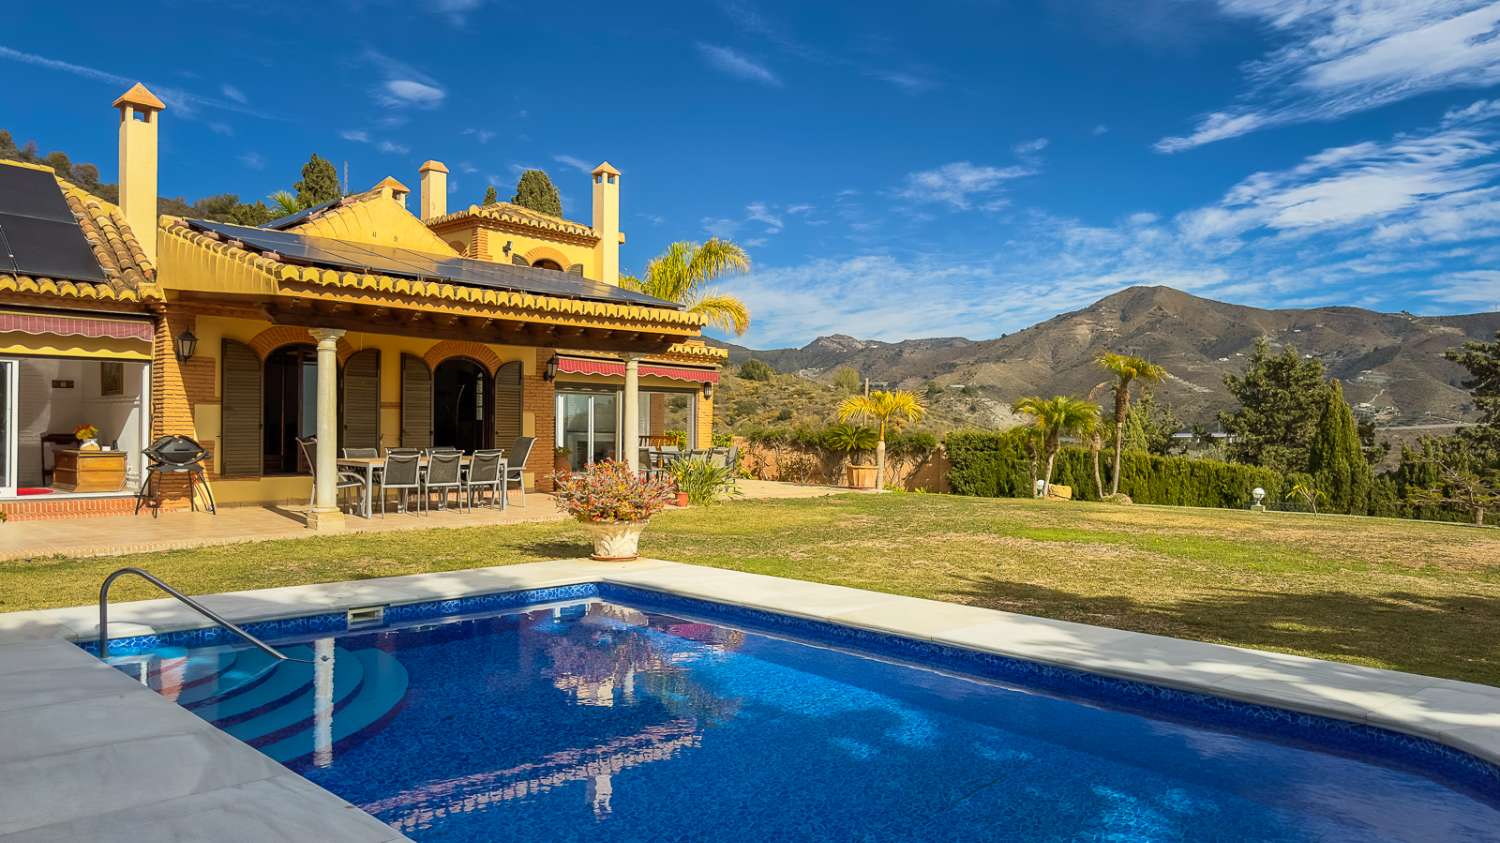 Magnifique villa avec vue mer et piscine !